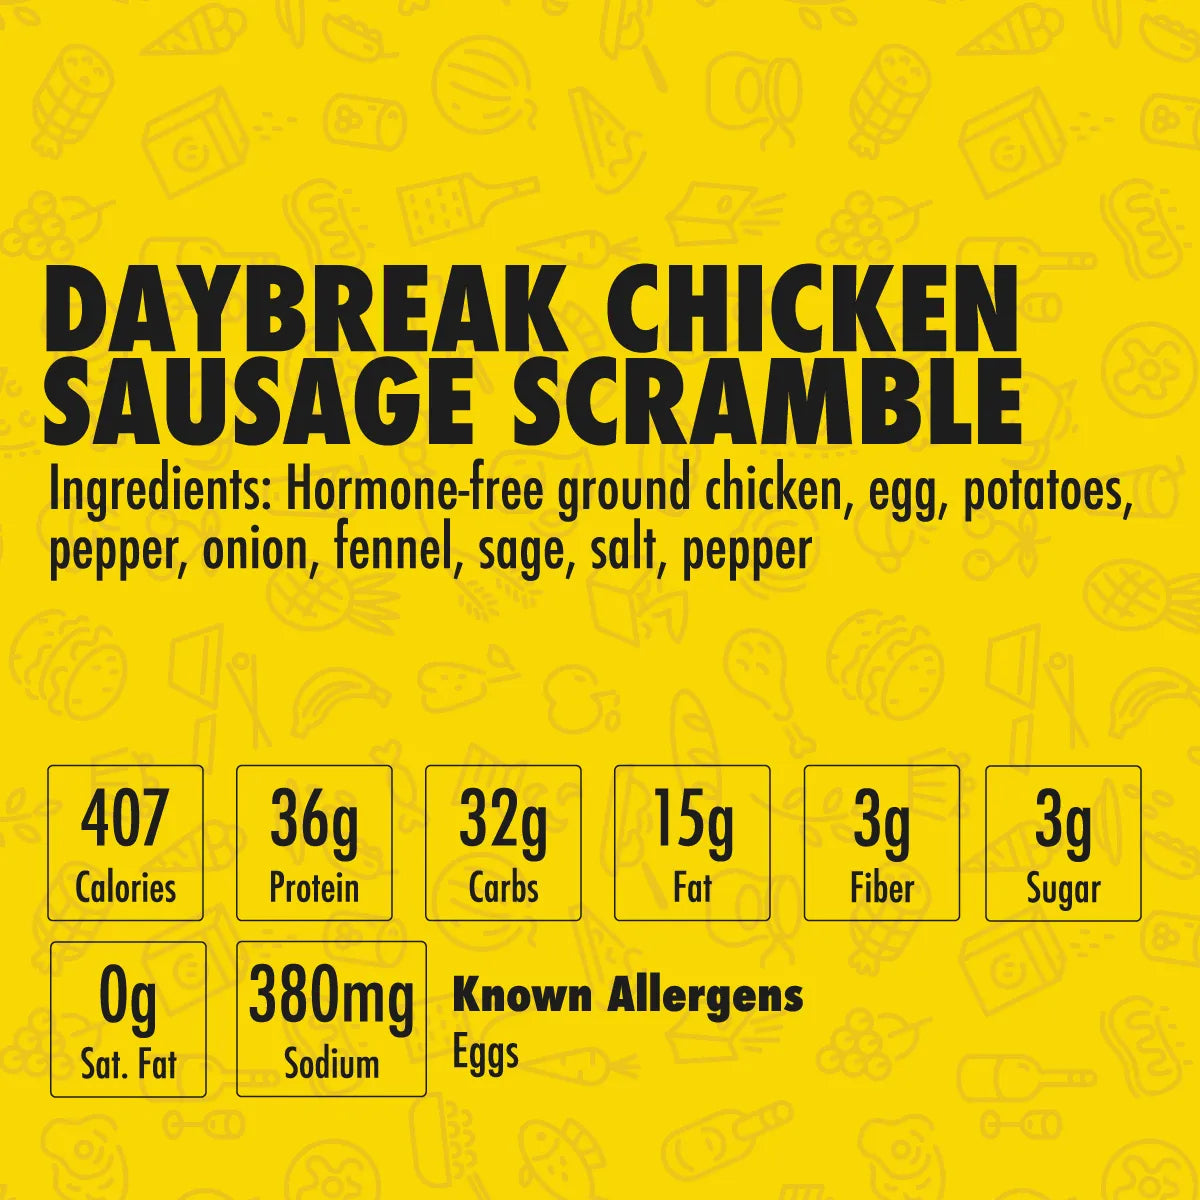 Daybreak Chicken Sausage Scramble